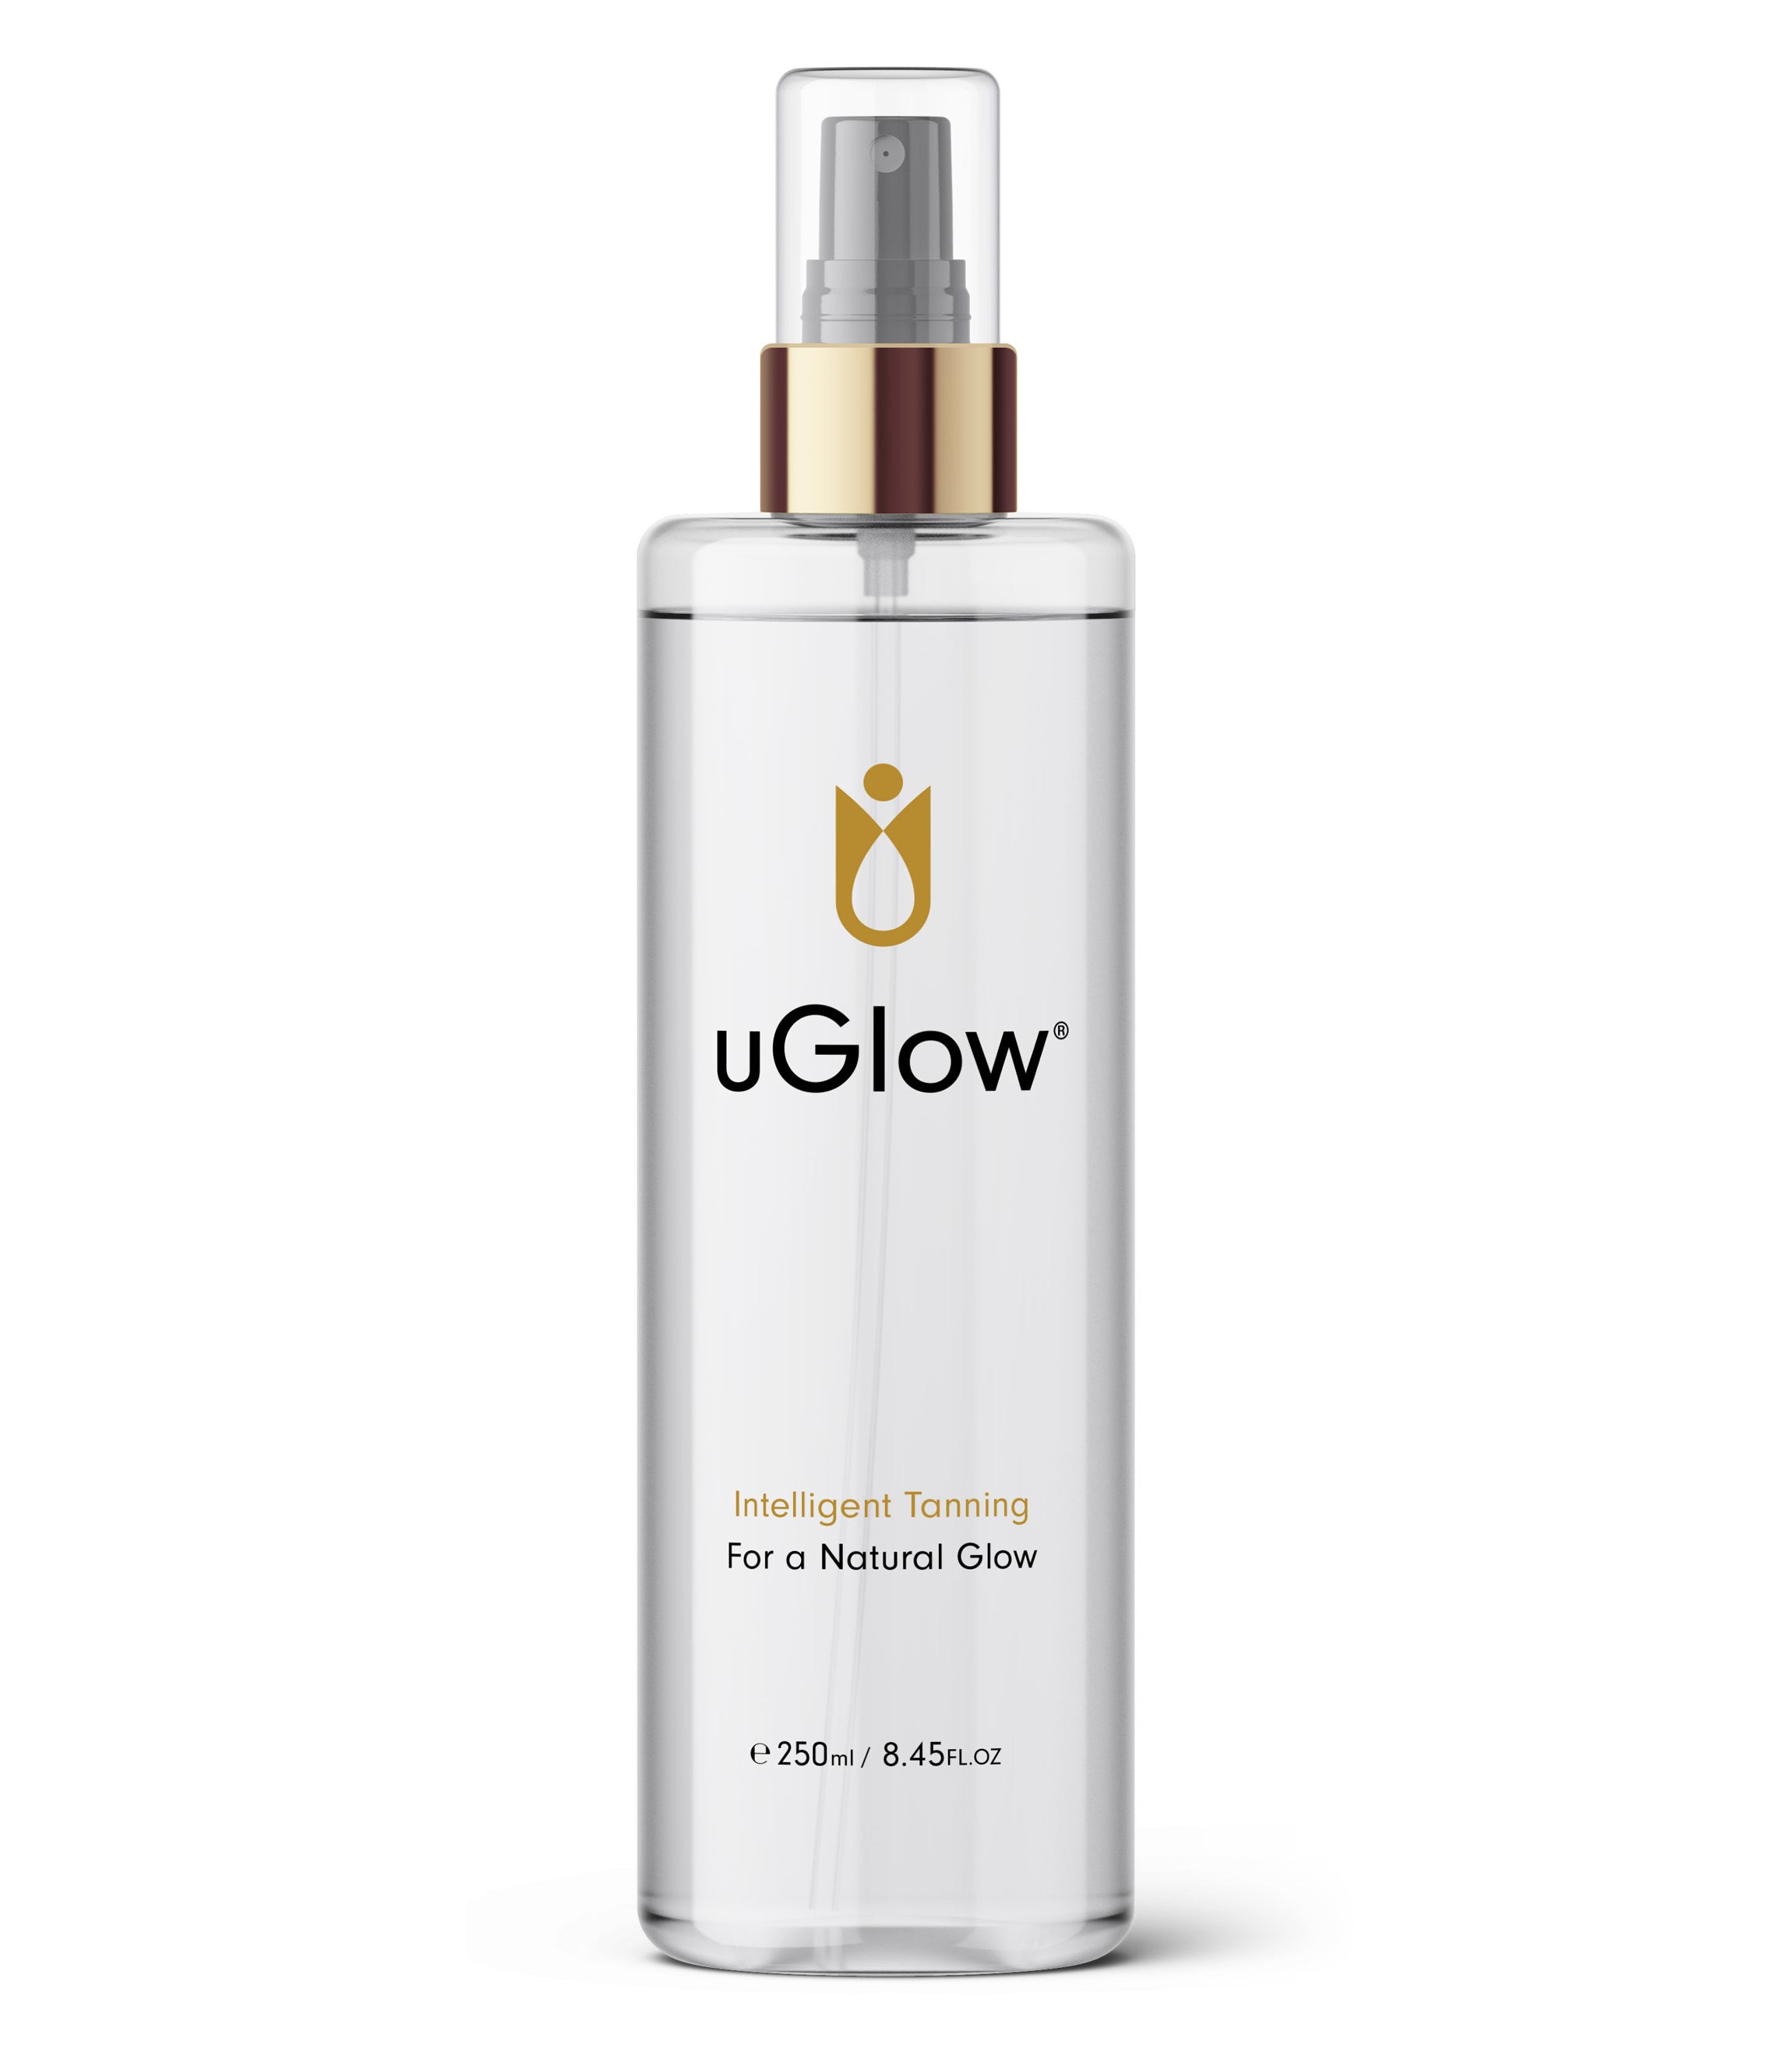 UGlow Tanning Water